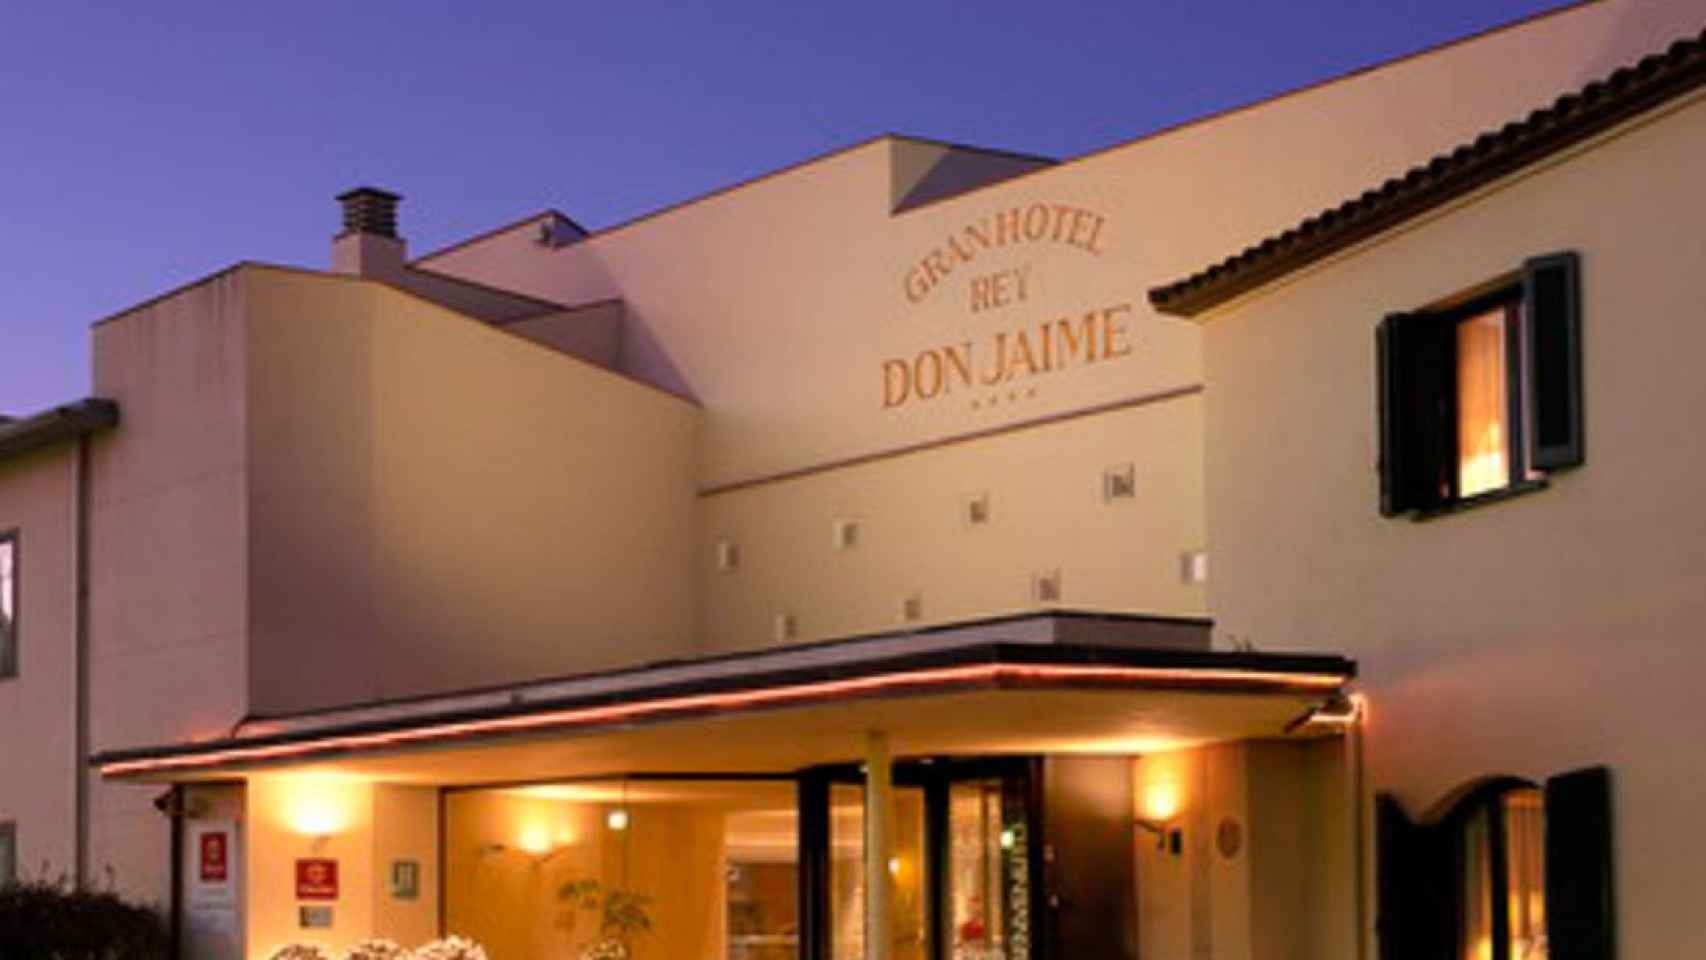 Hotel Don Jaime propiedad de Grupo Soteras / CG